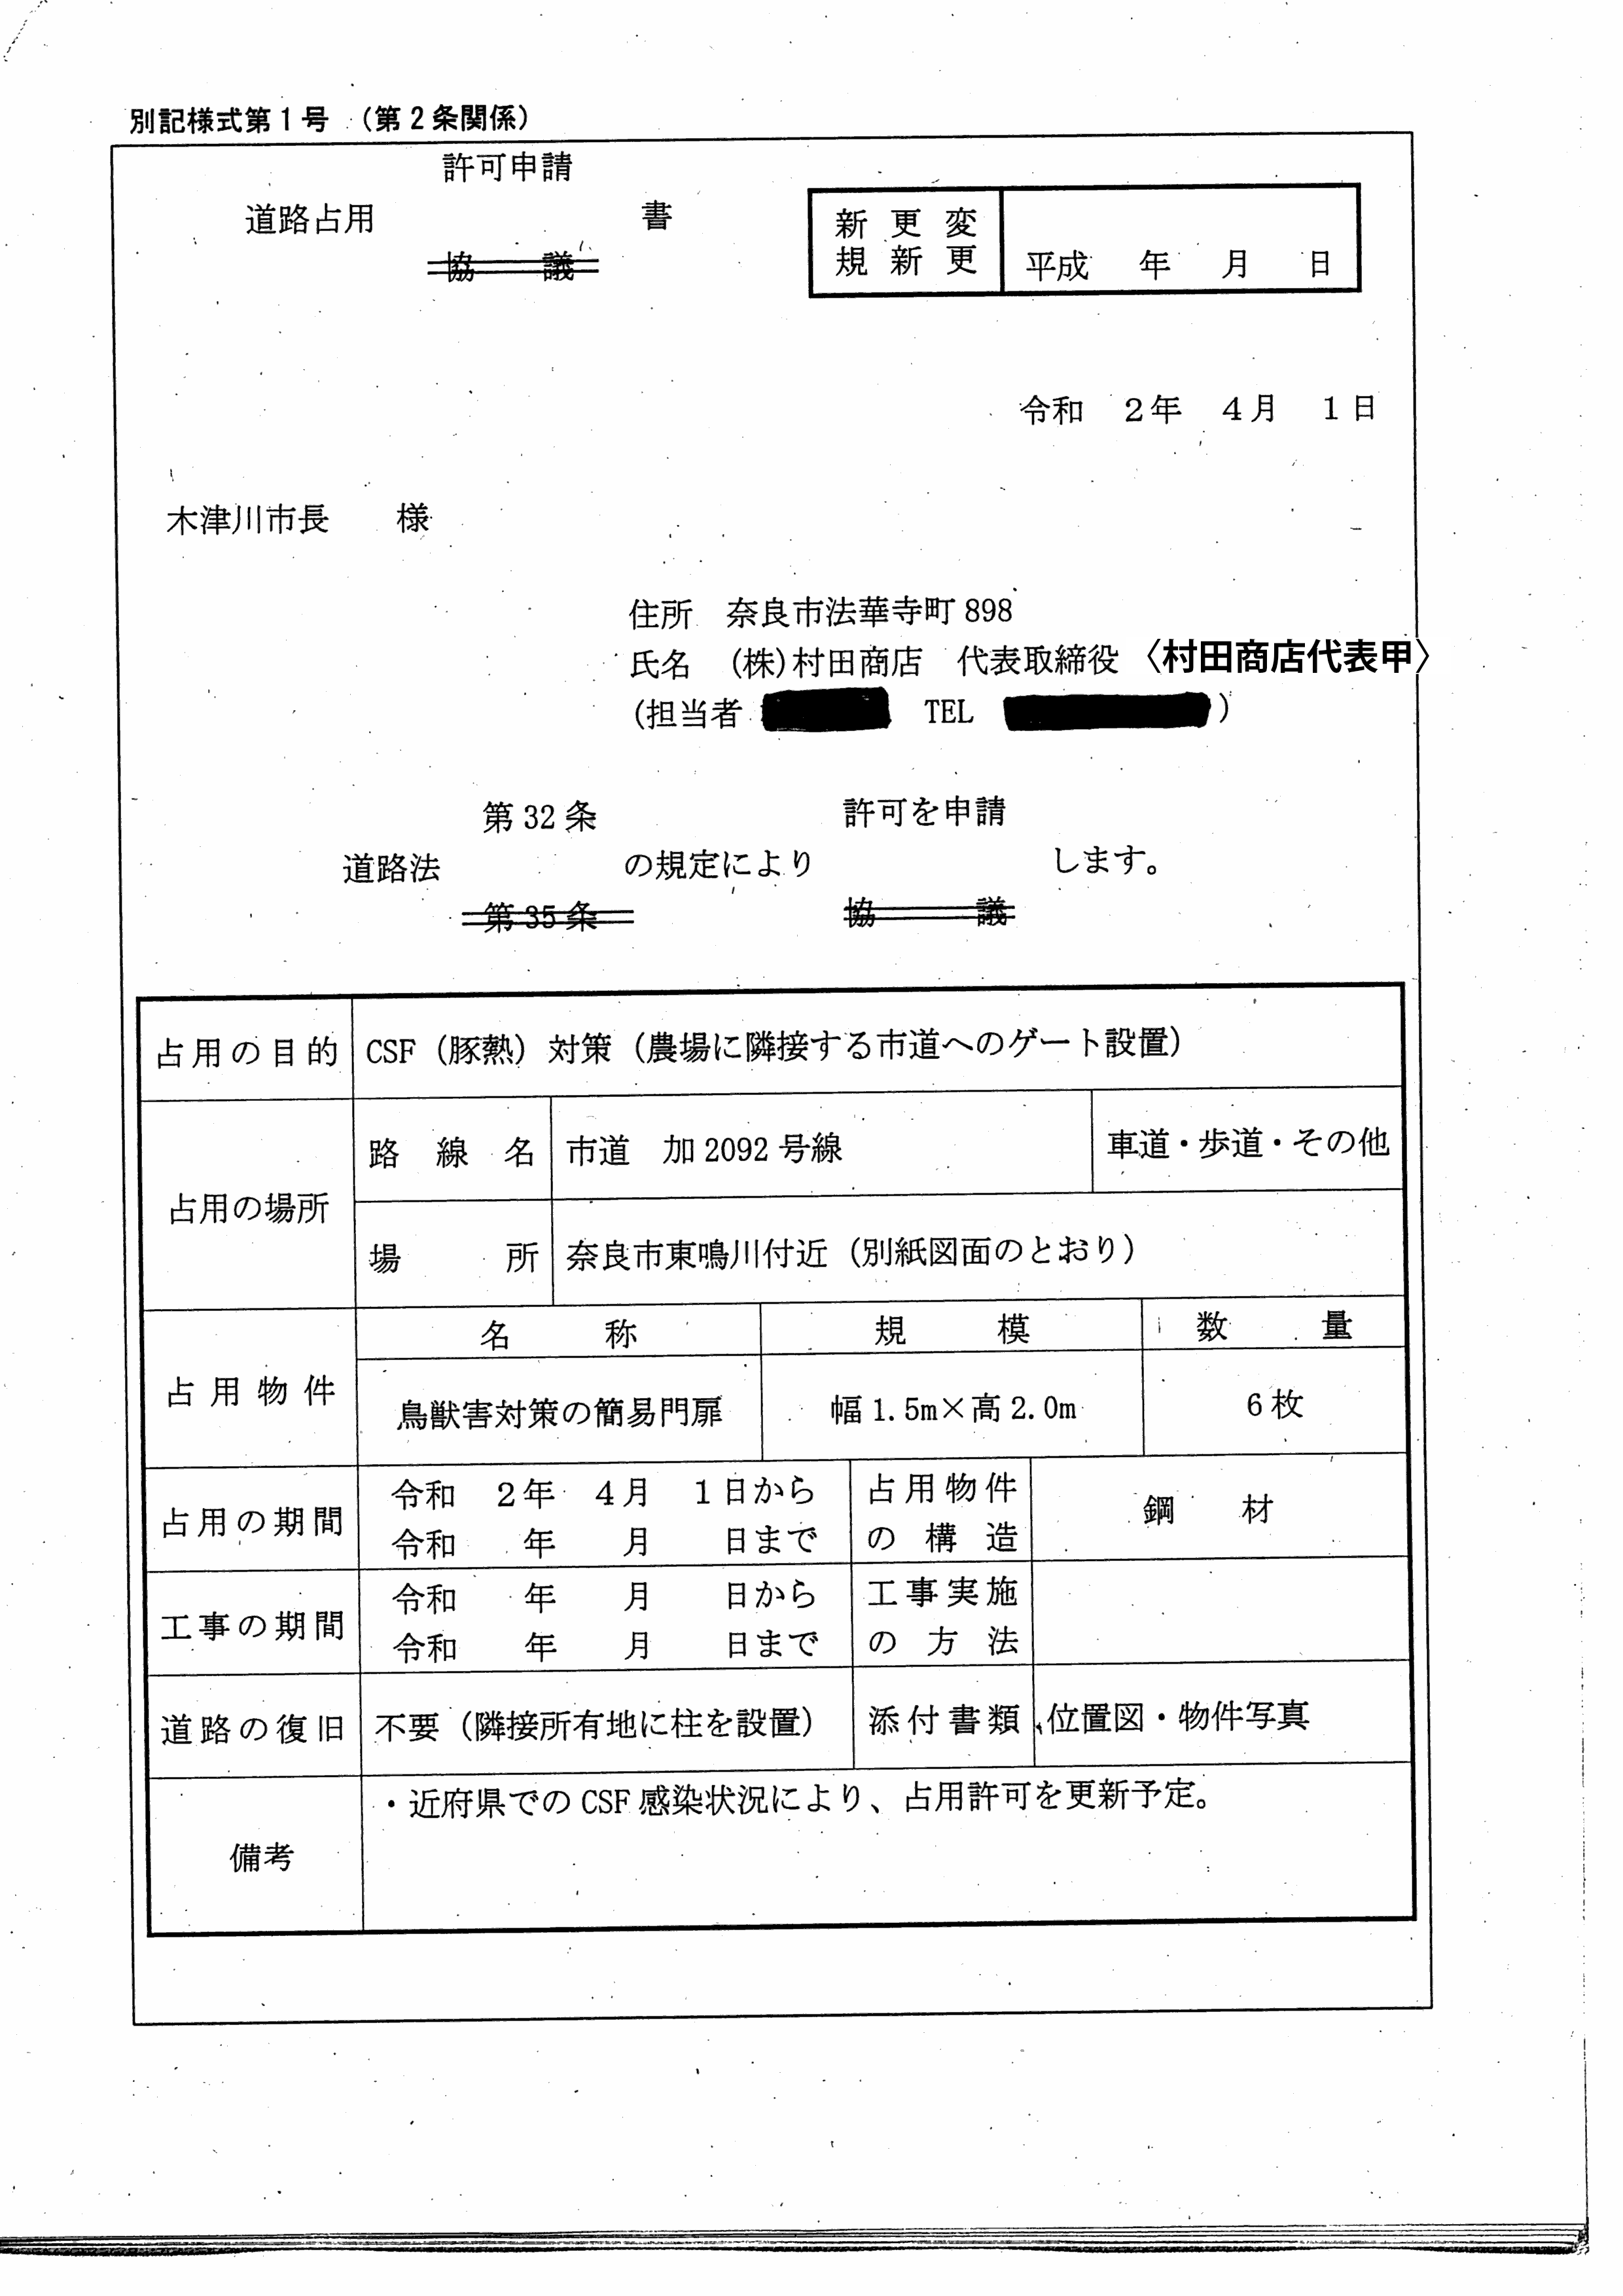 令和2年4月14日-村田養豚場の防護柵に係る奈良県との協議に関する報告書-07-道路占用許可申請書